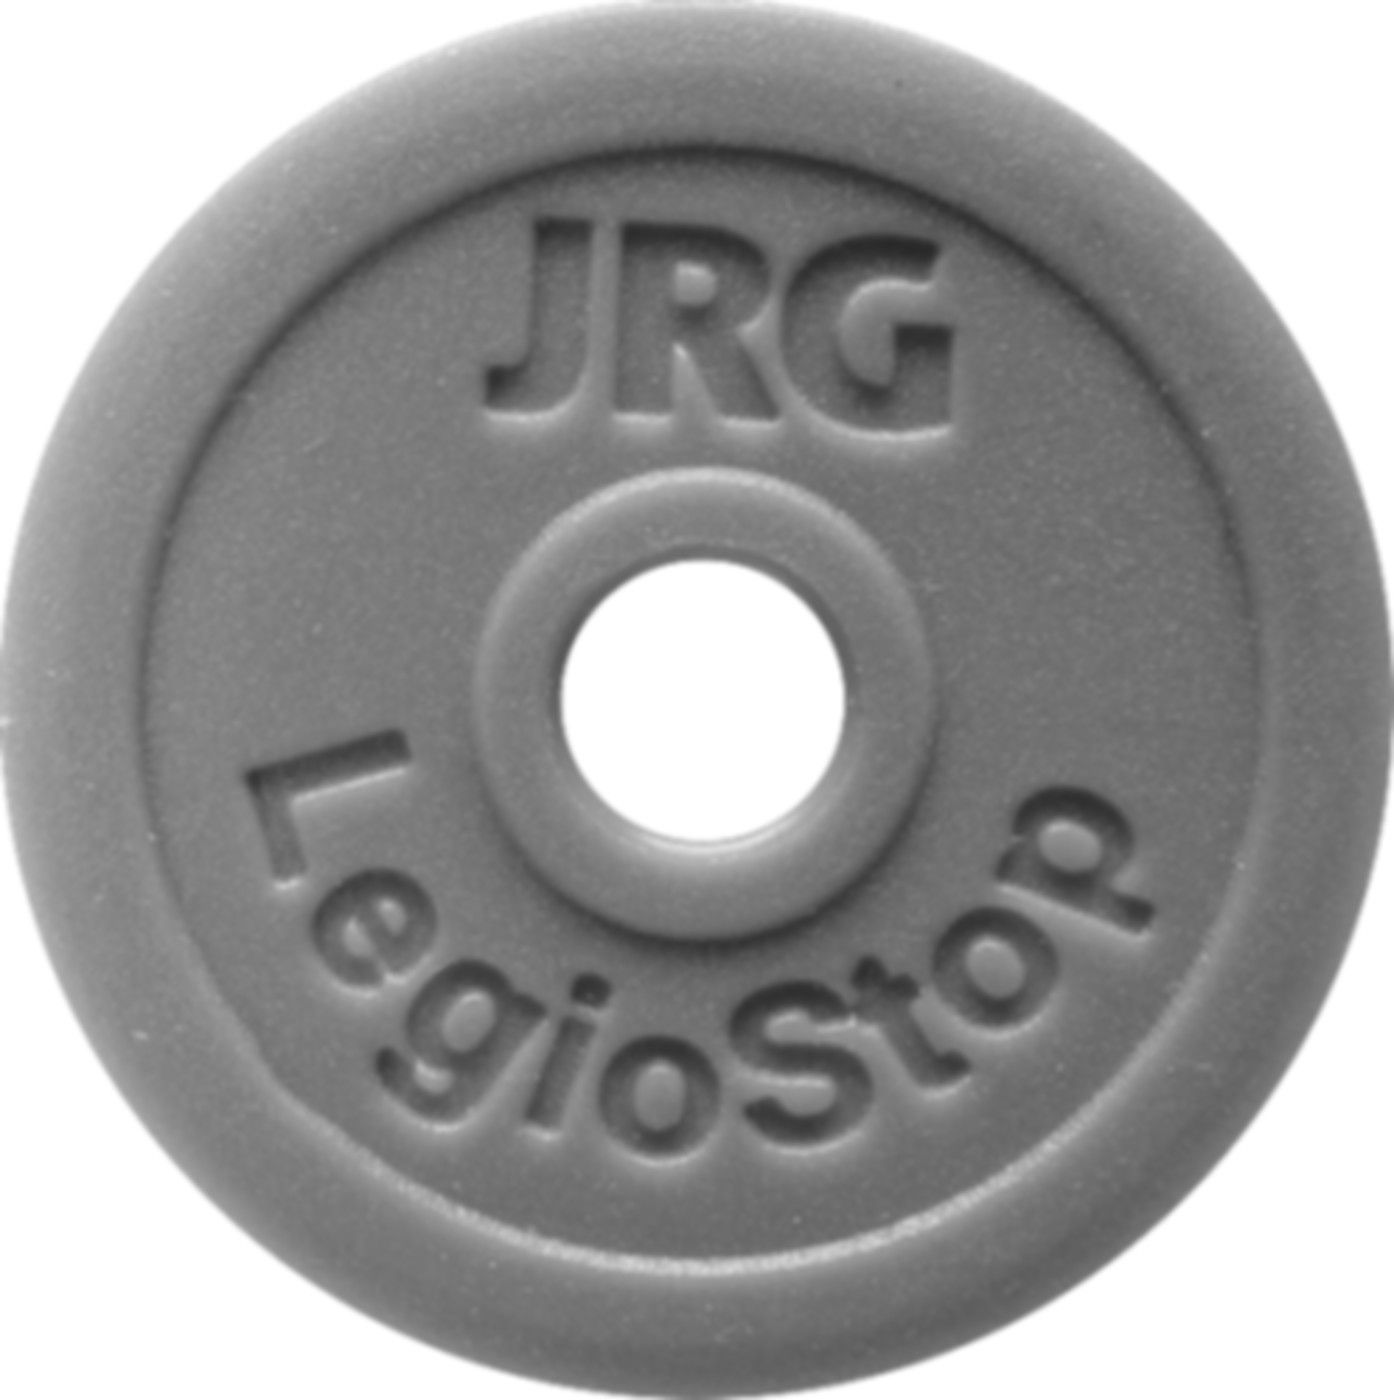 Markierschild Grün d 60mm 8501.101 für Oberteil LegioStop 1" - JRG Armaturen